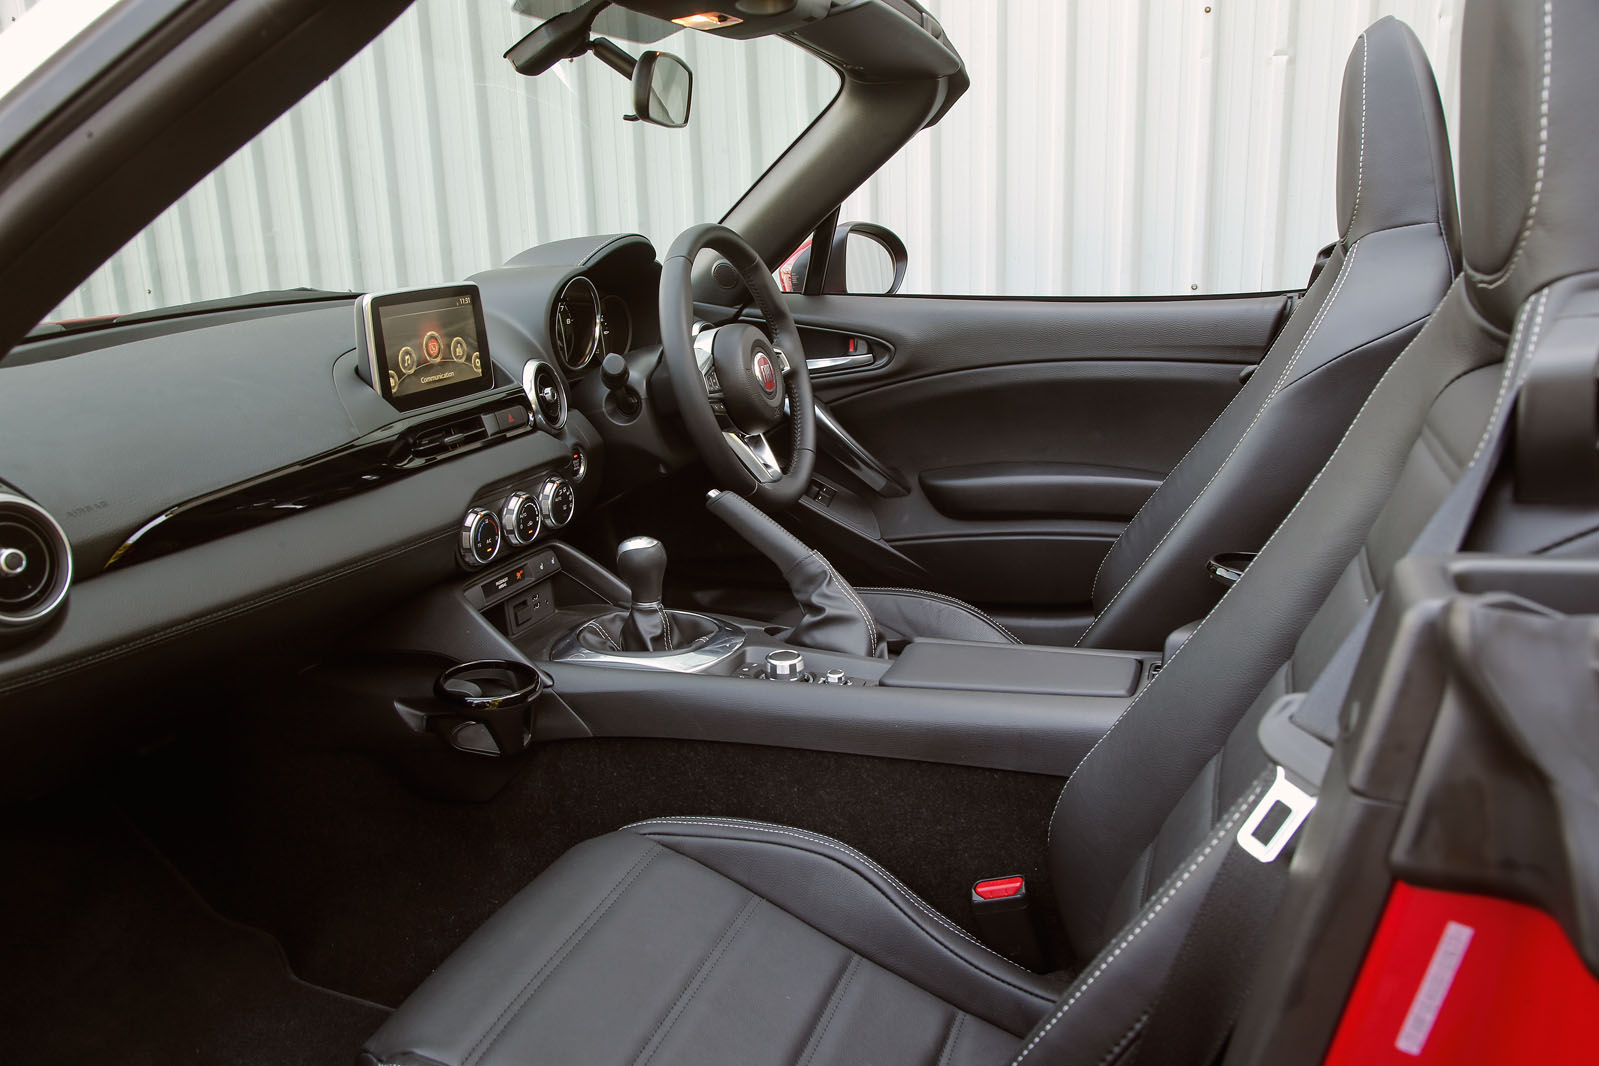 Fiat 124 Spider interior